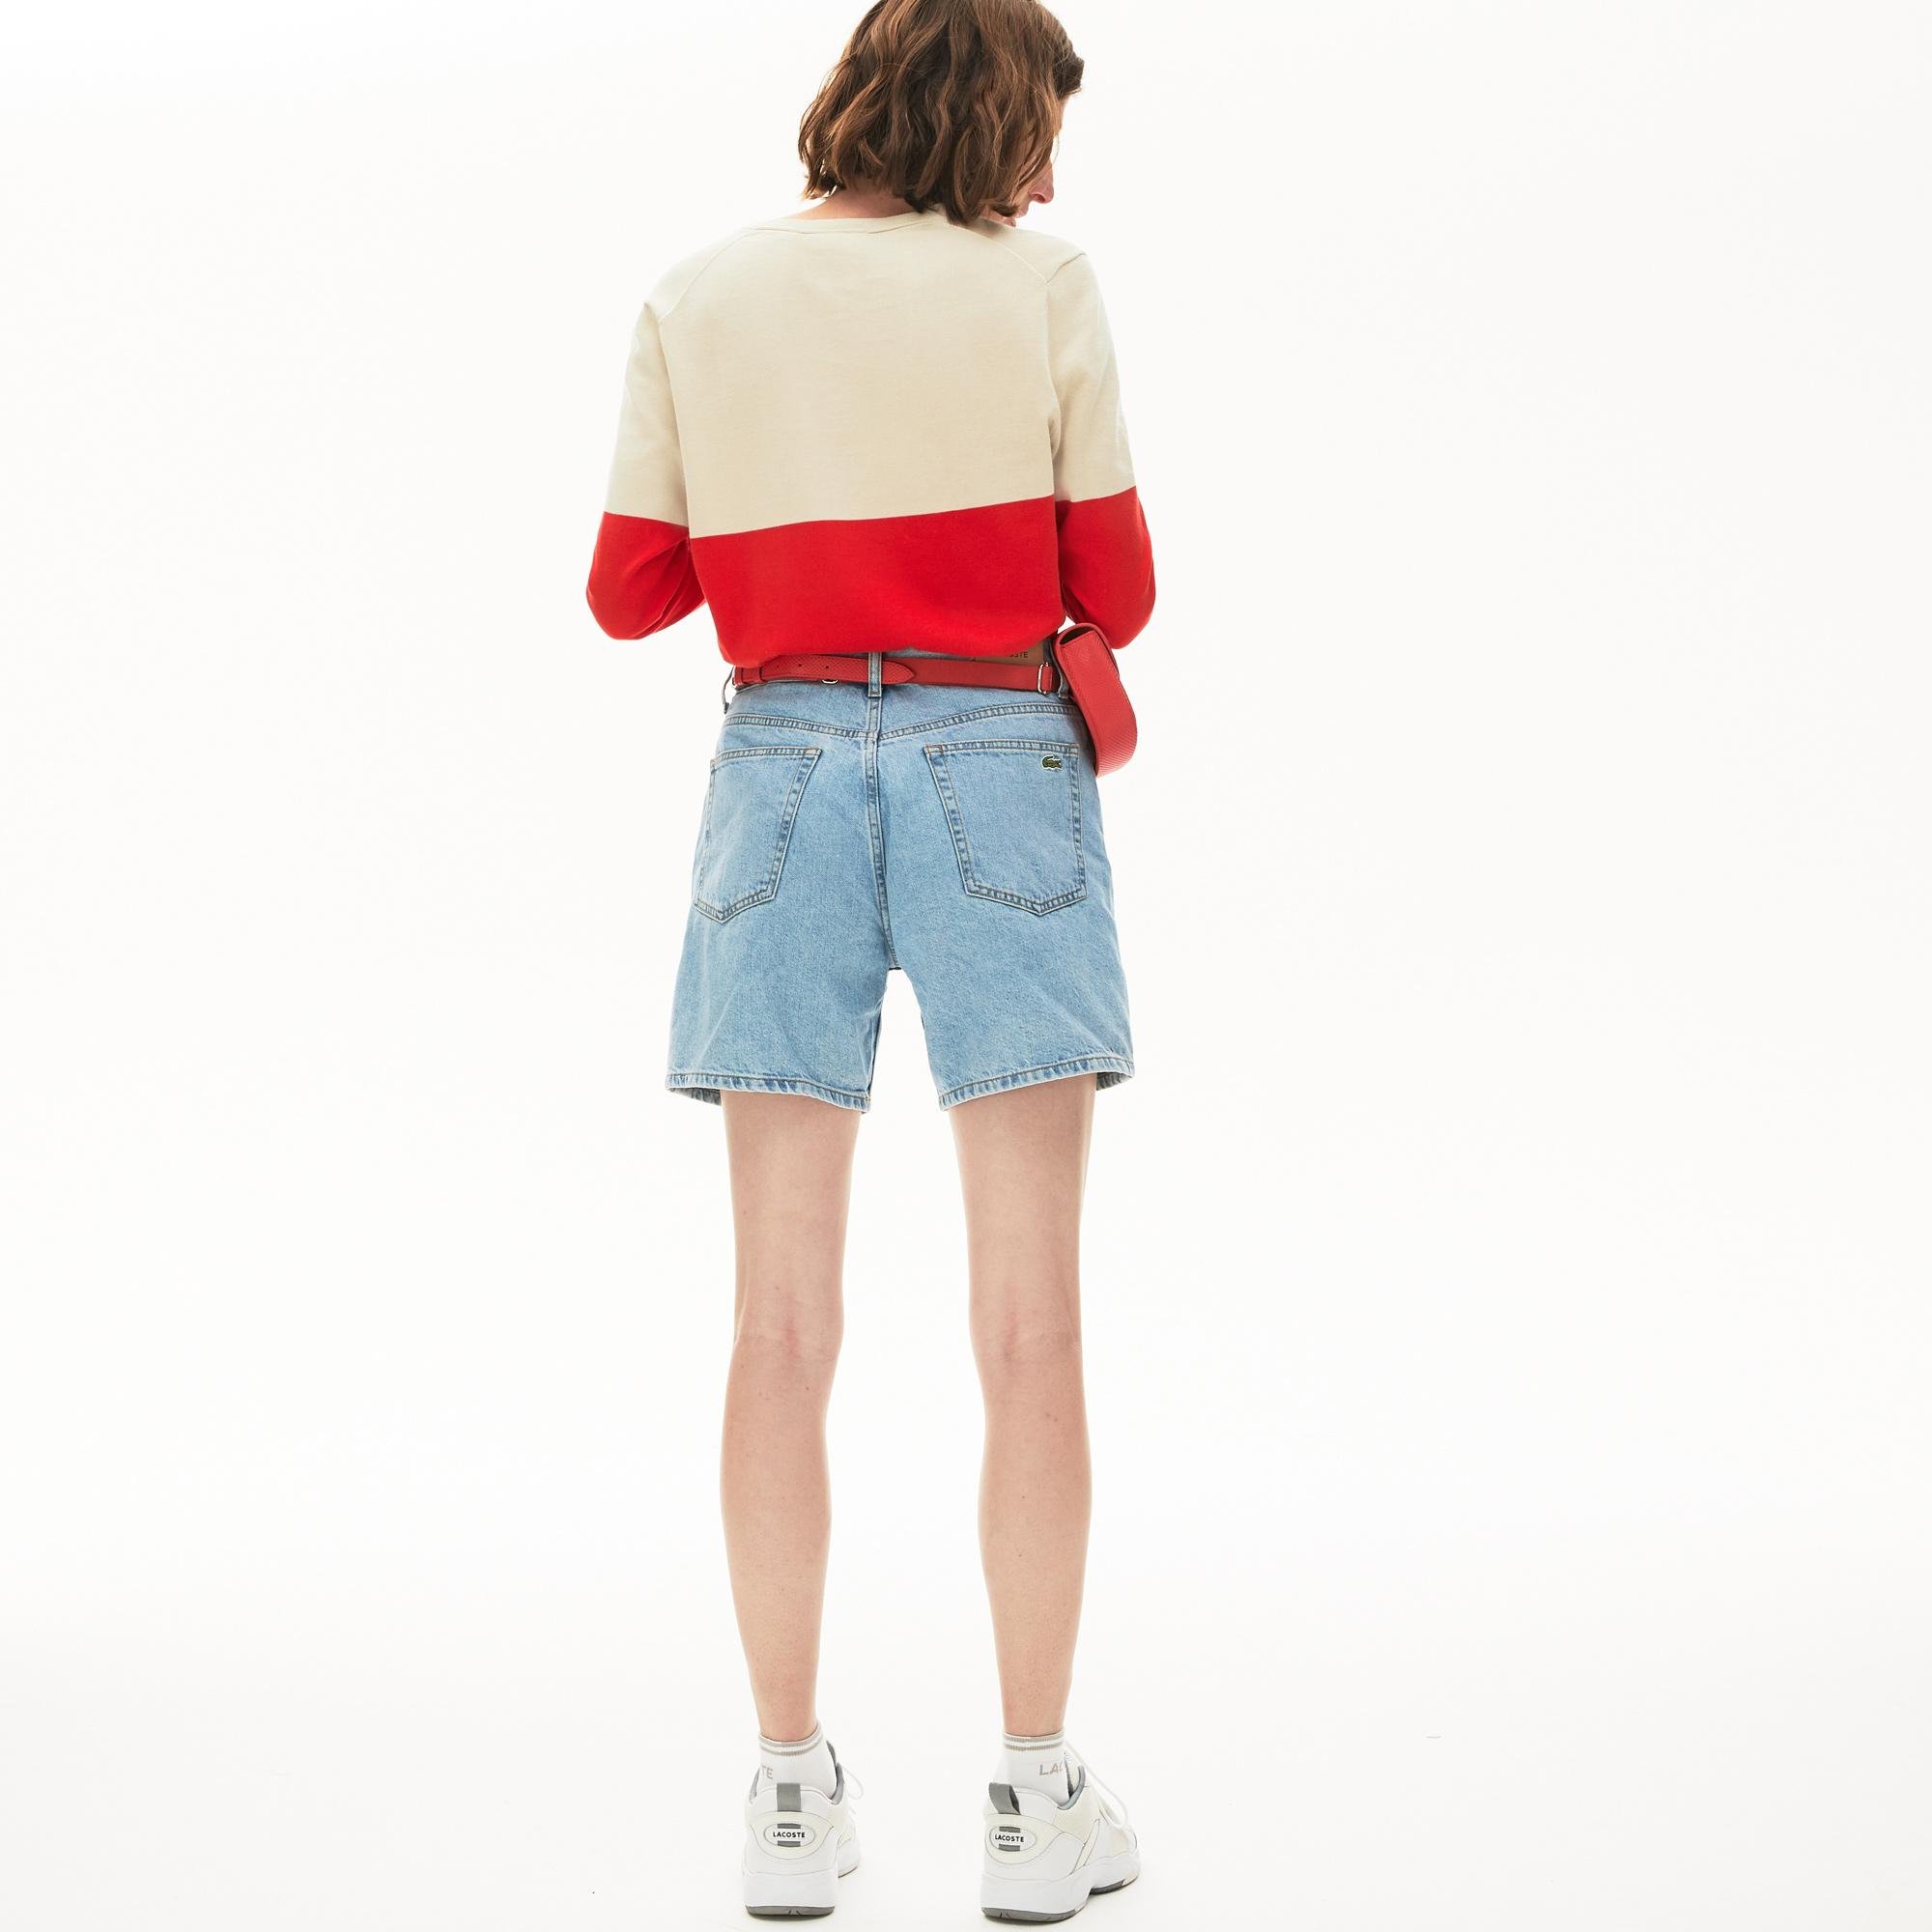 Lacoste Women's Colourblock Cotton V-Neck Sweater